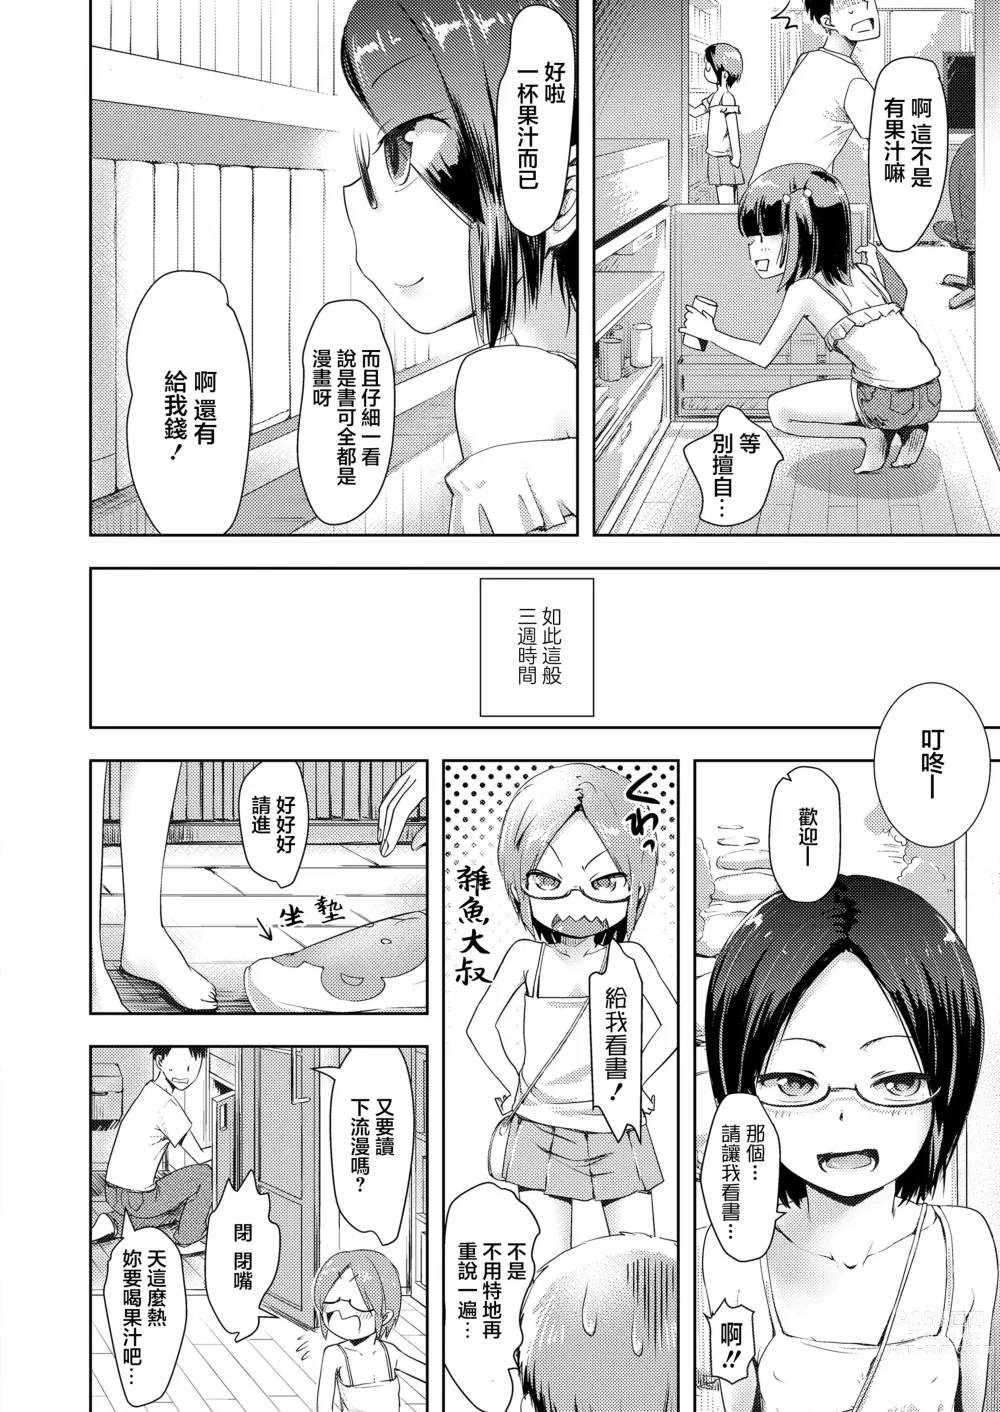 Page 6 of doujinshi Tousatsu no Tousatsu